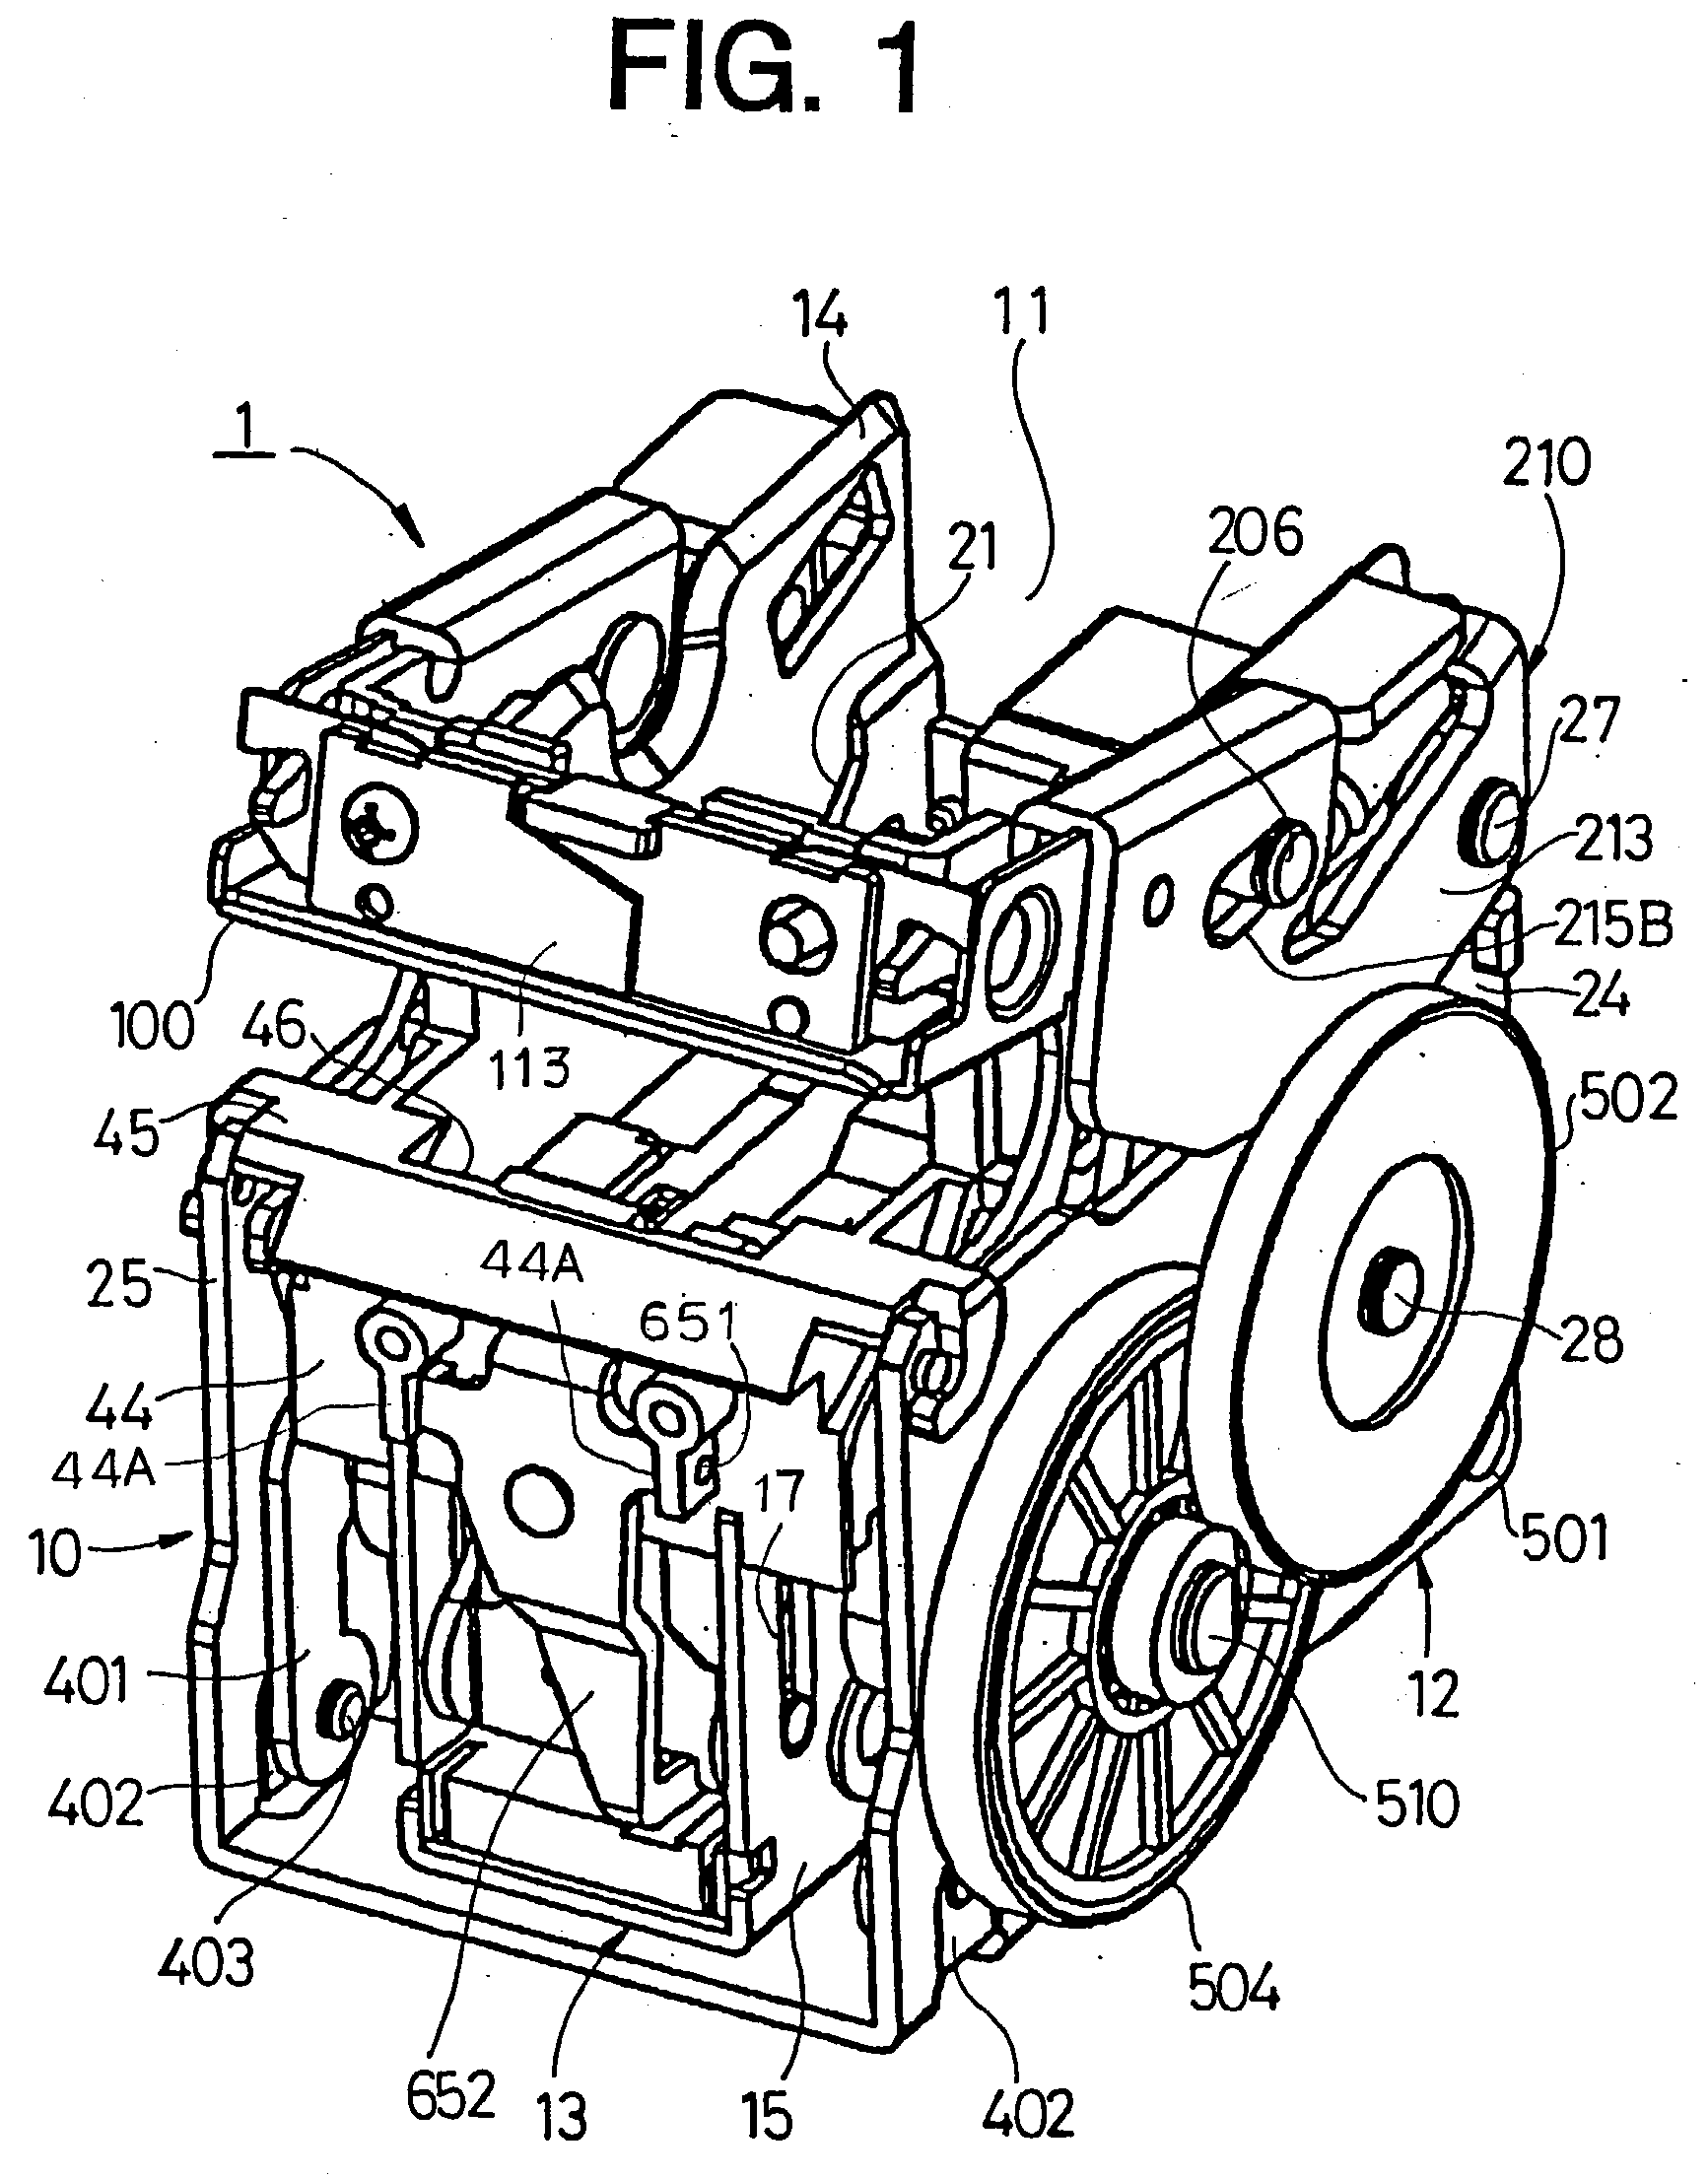 Motor-driven stapler